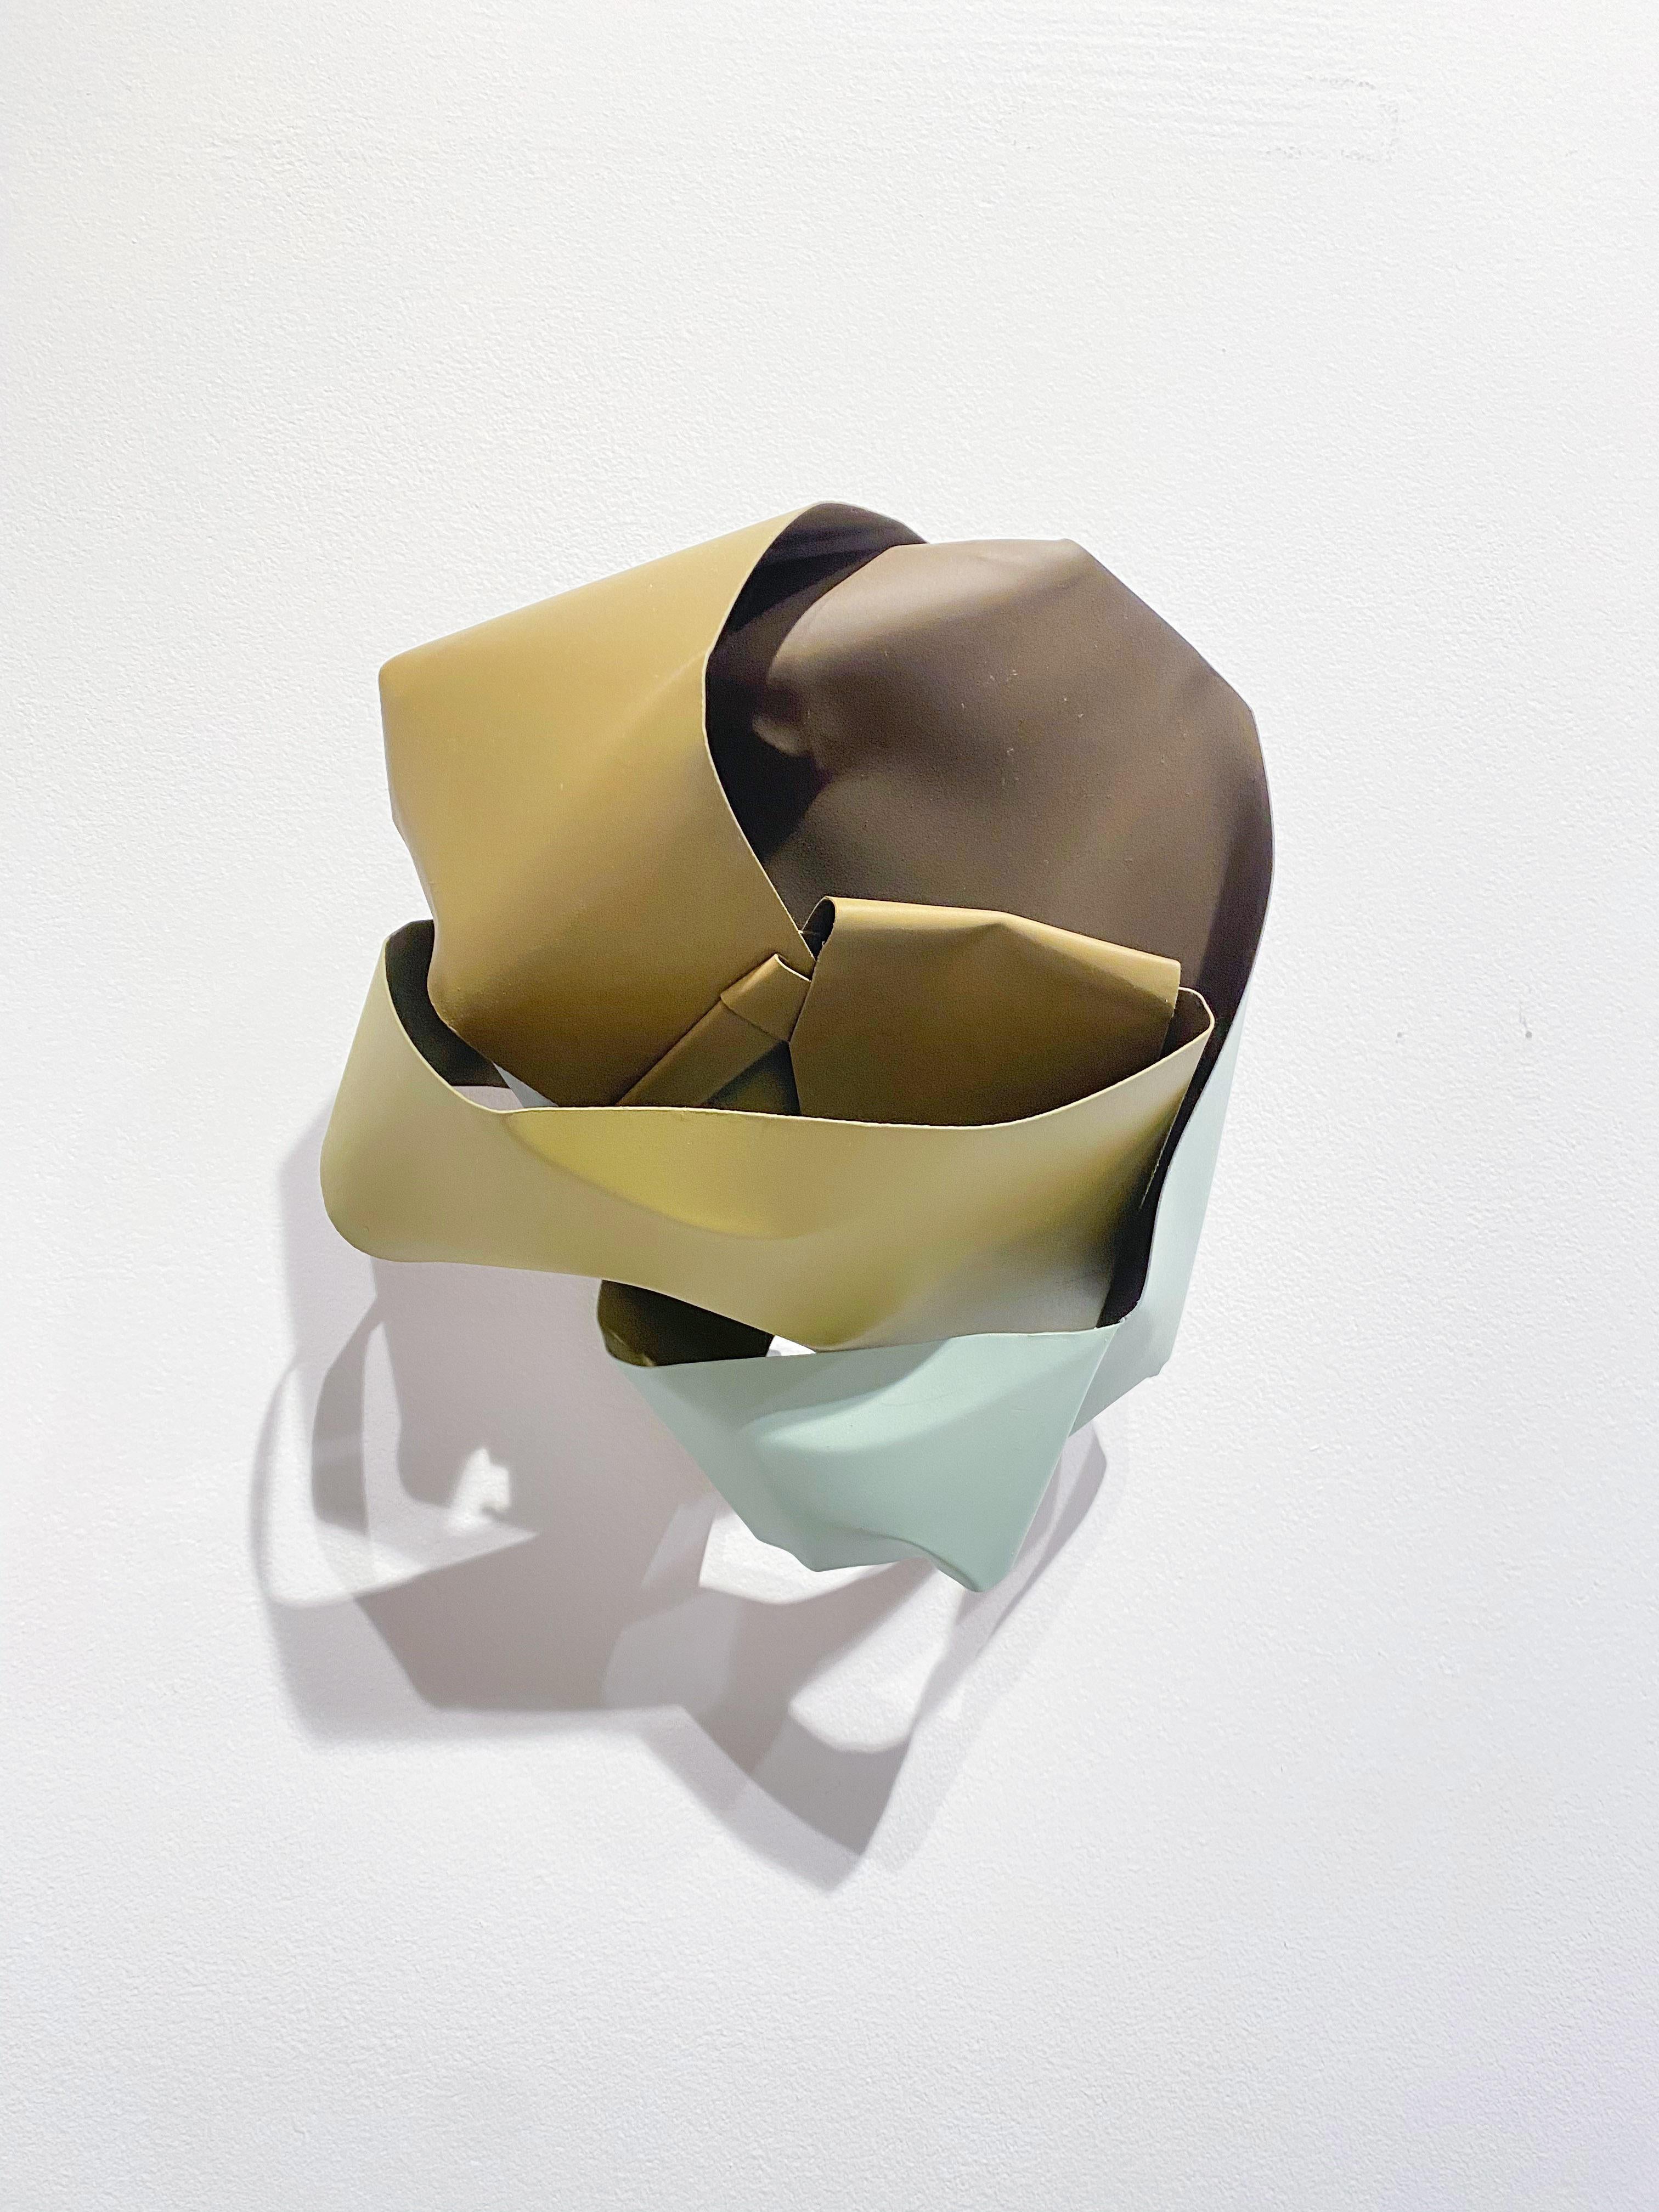 Robert Burnier Abstract Sculpture – Li Diris, Ke Li Revenos 